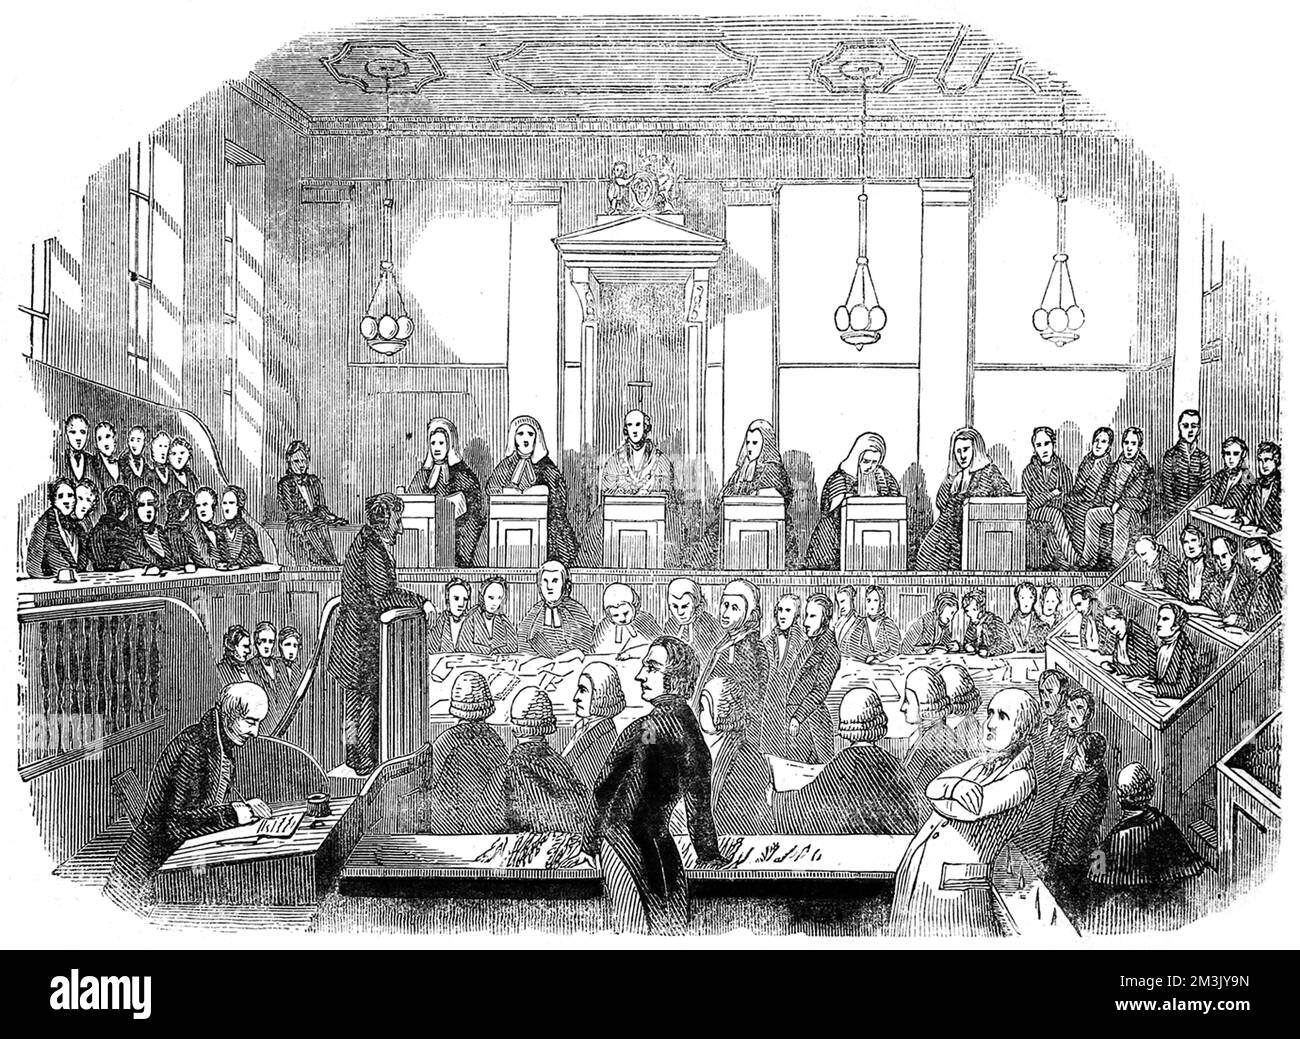 Eine Skizze des Gerichtssaals in Old Bailey, in dem der Prozess gegen M' Naughten stattfand, für den Mord an Edward Drummond, dem Sekretär von Premierminister Sir Robert Peel. Mr. M. Naughten war auf Sir Robert Peel fixiert, und bei seinem Attentat schlug er Drummond. Der Prozess wurde berüchtigt und wird heute noch angeführt, da er auf Unzurechnungsfähigkeit plädierte und daher nicht vor Gericht gestellt wurde. 1848 Stockfoto